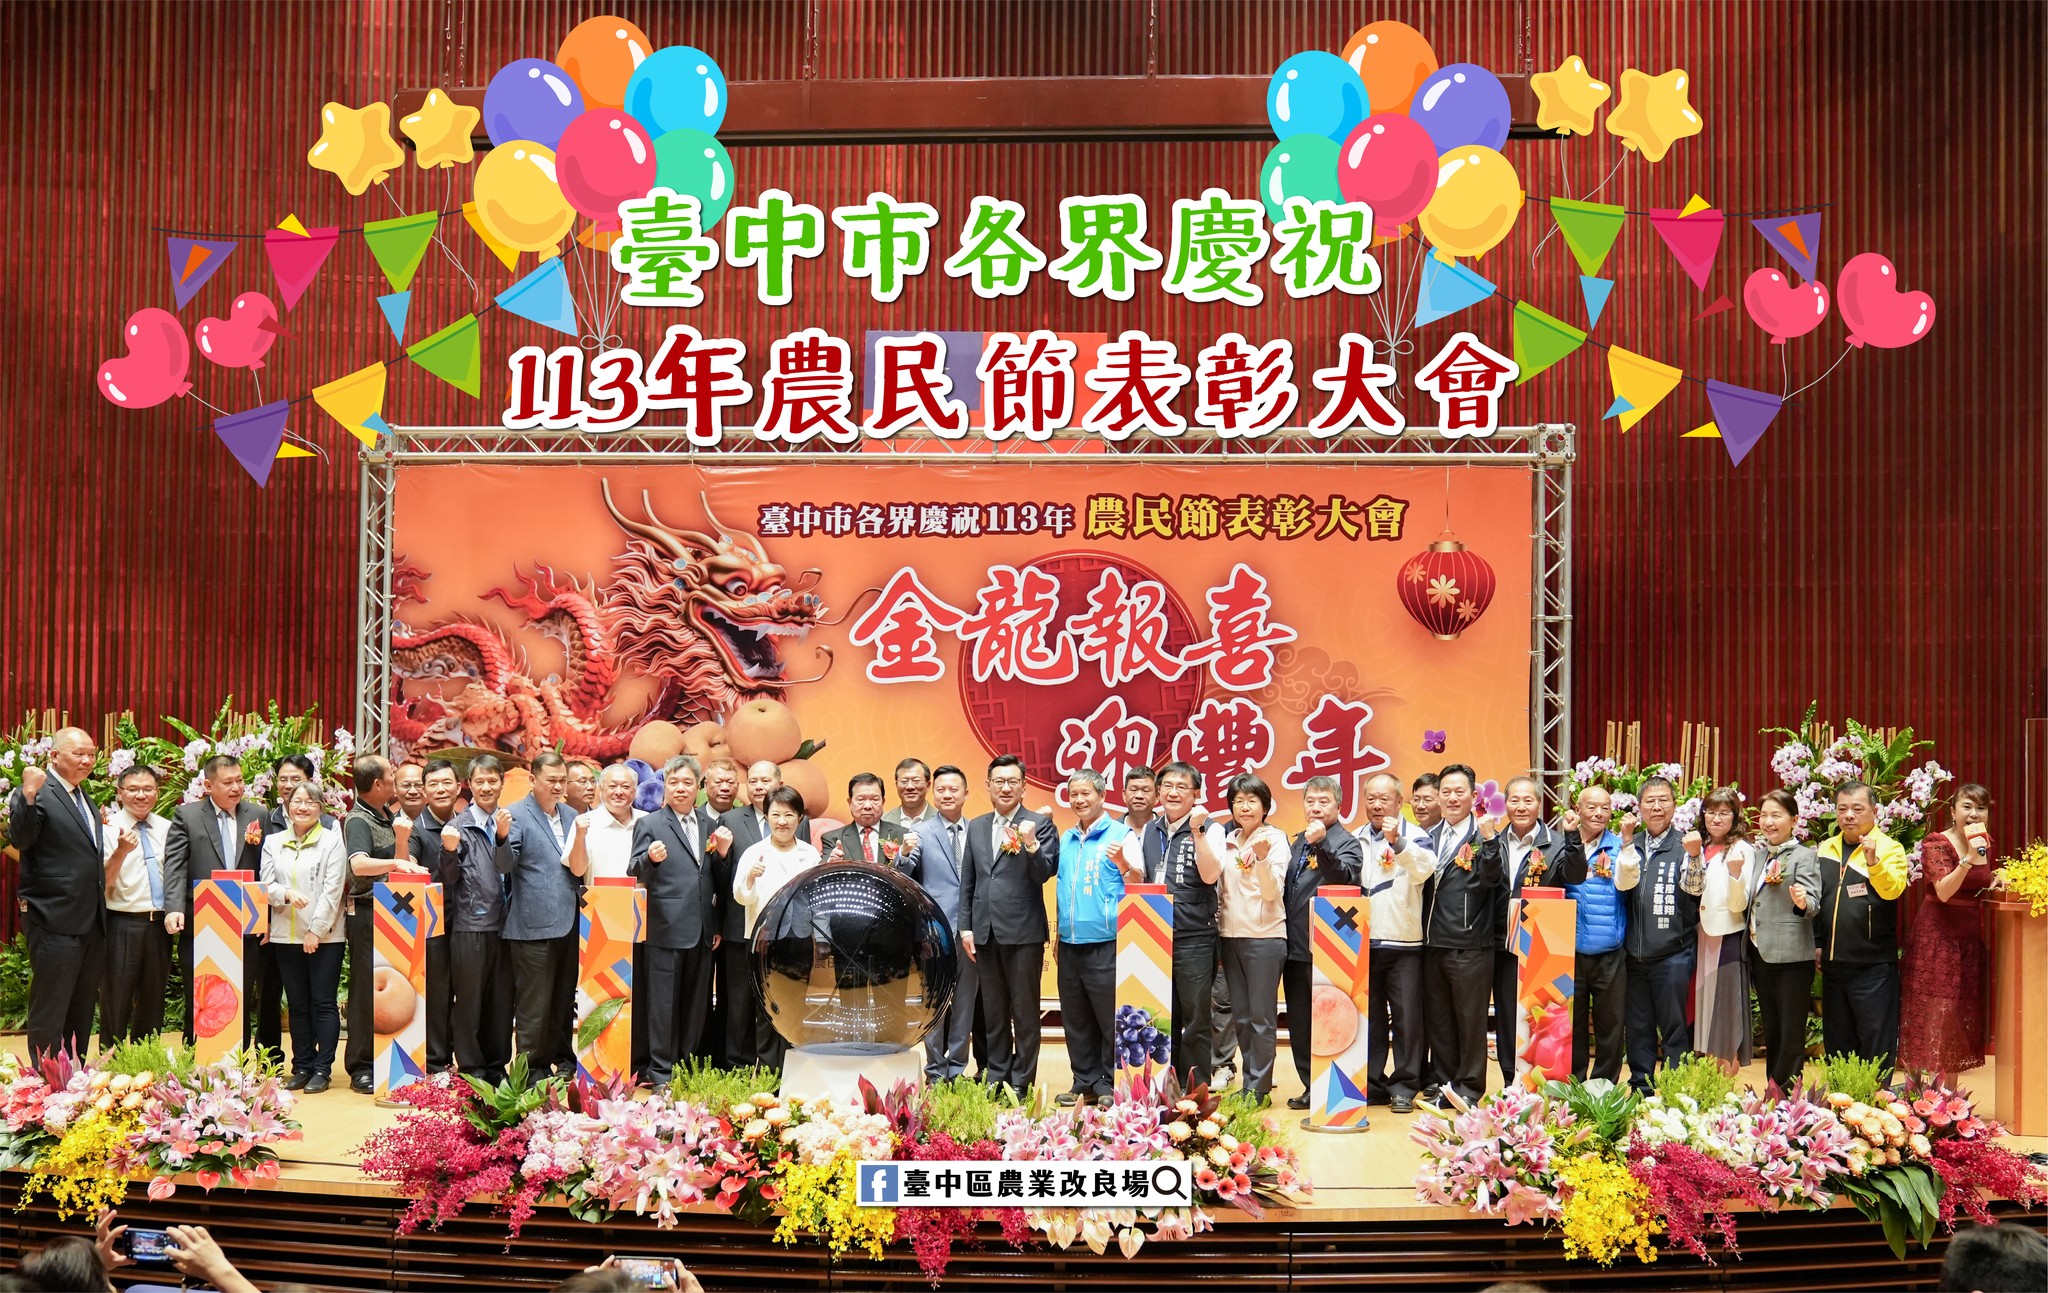 04月10日 臺中市113年度農民節表彰大會